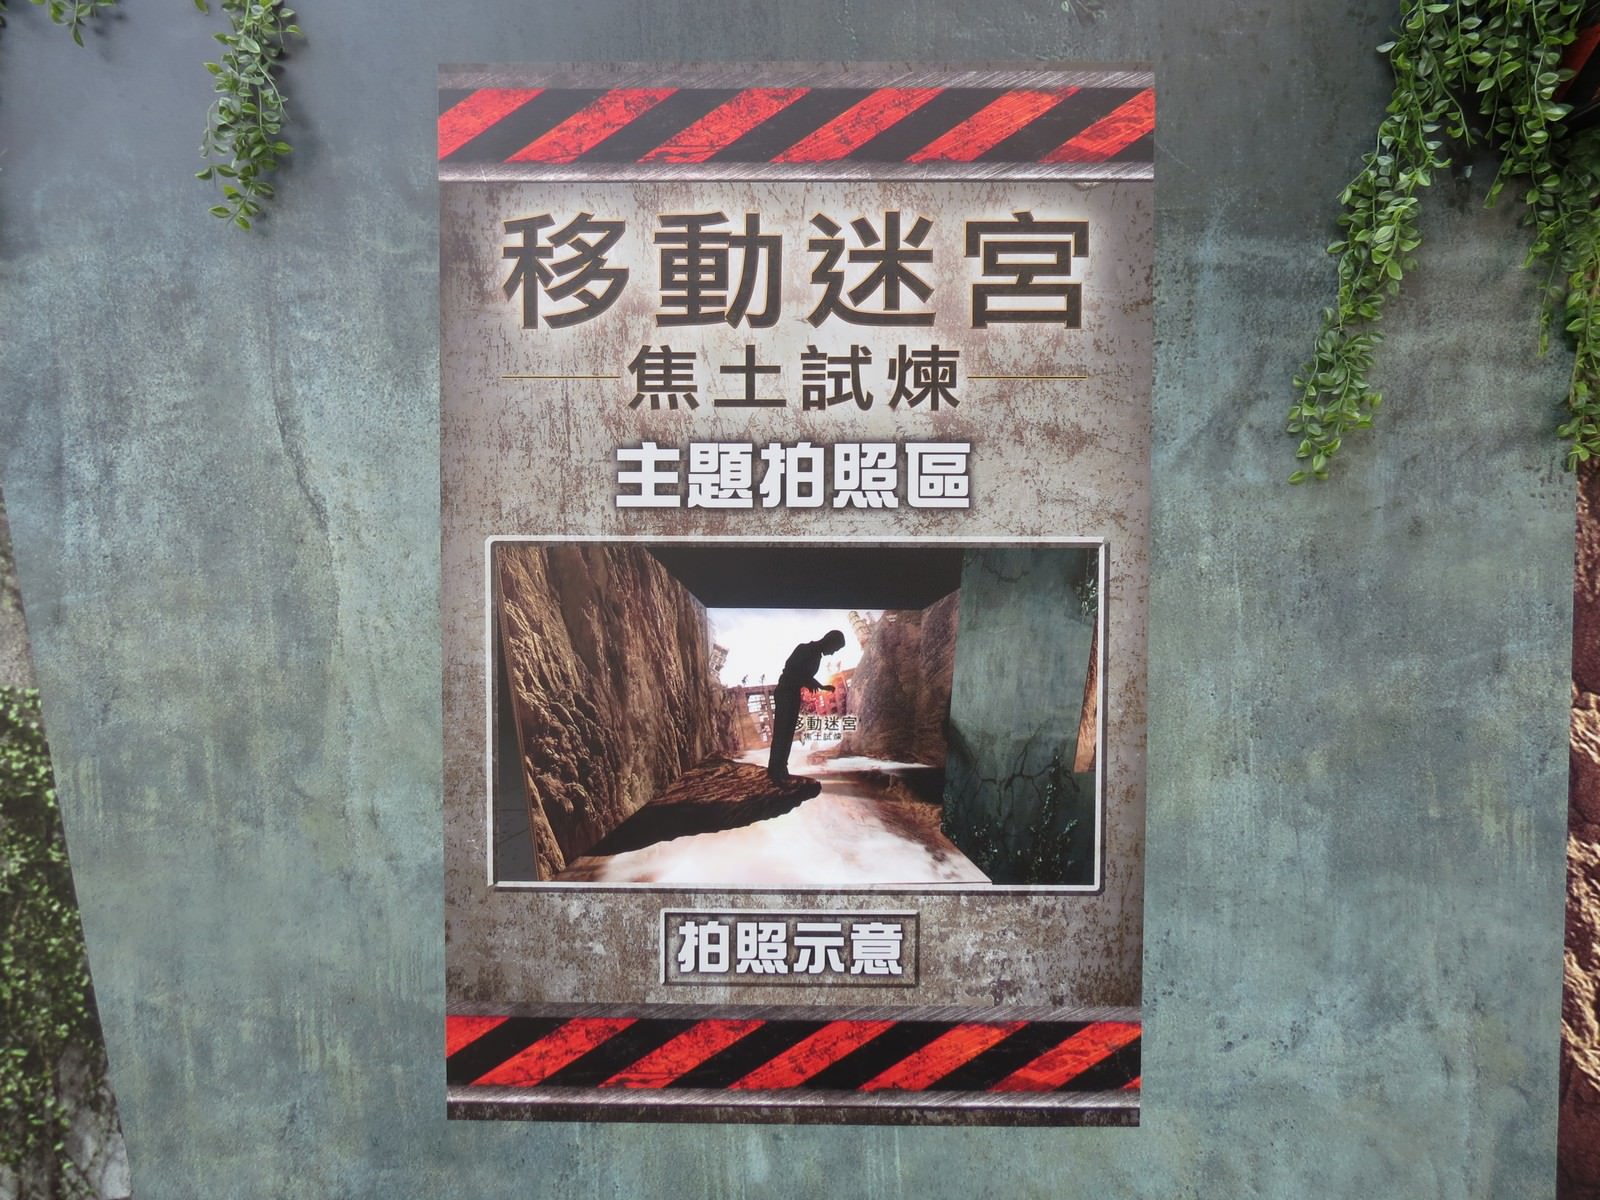 Movie, Maze Runner: The Death Cure(美國, 2018) / 移動迷宮：死亡解藥(台灣.香港) / 移动迷宫3：死亡解药(中國), 廣告看板, 三創數位生活園區